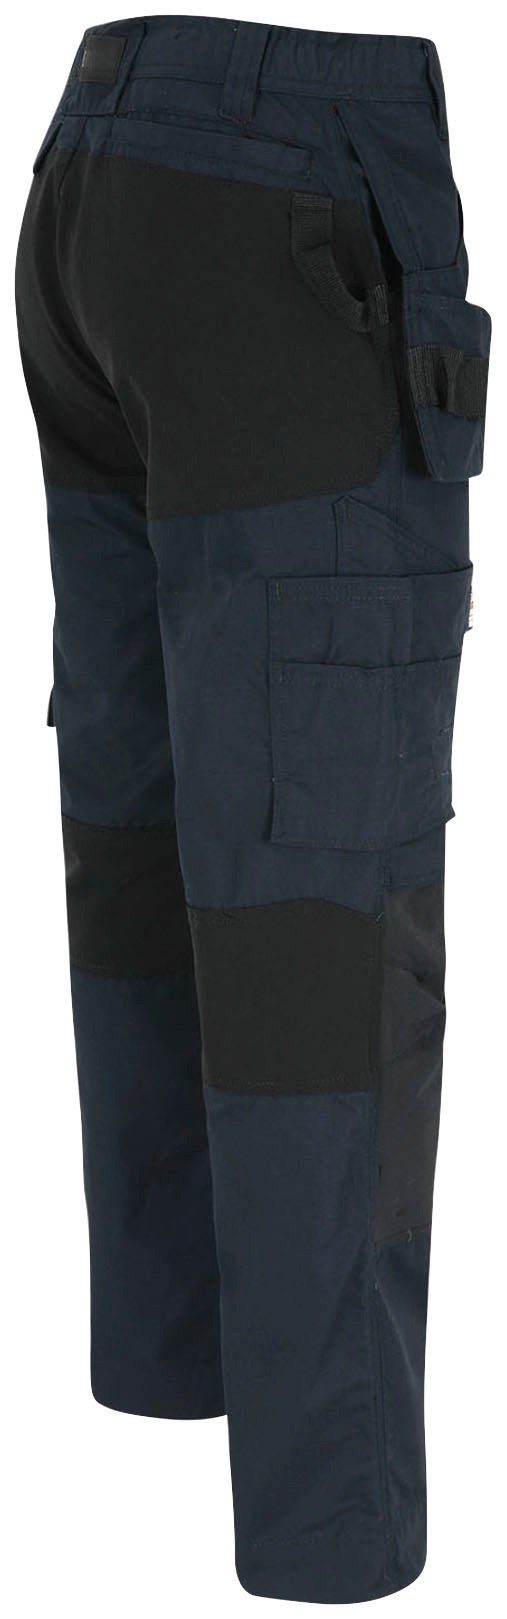 festen 2 Multi-Pocket-Hose Nageltaschen 4-Wege-Stretch-Teilen marine Herock Hose Arbeitshose mit und Spector